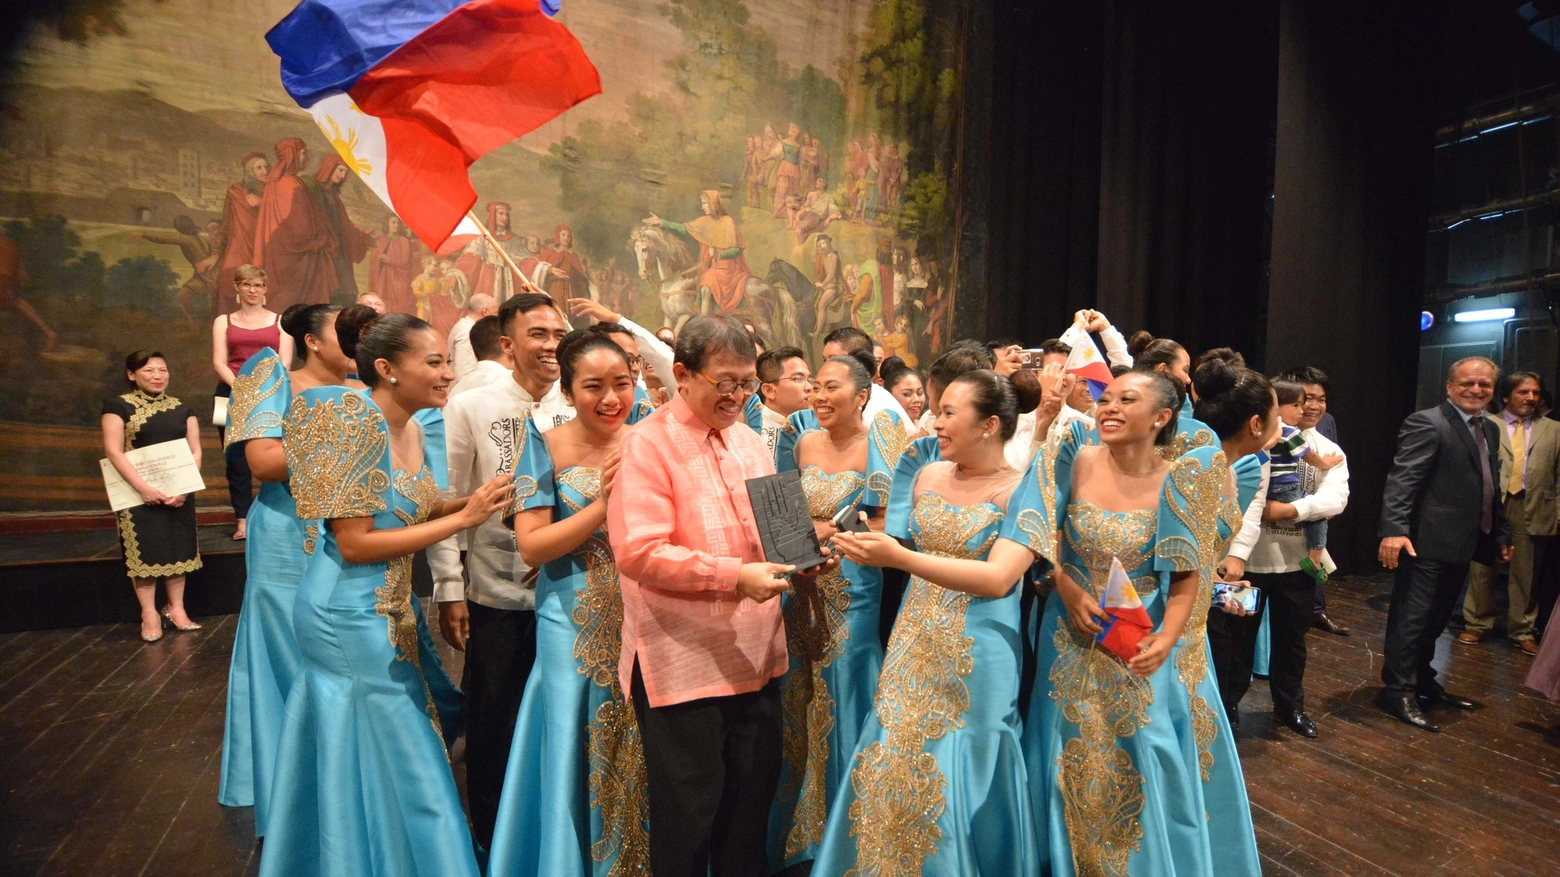 Il trionfo del coro filippino